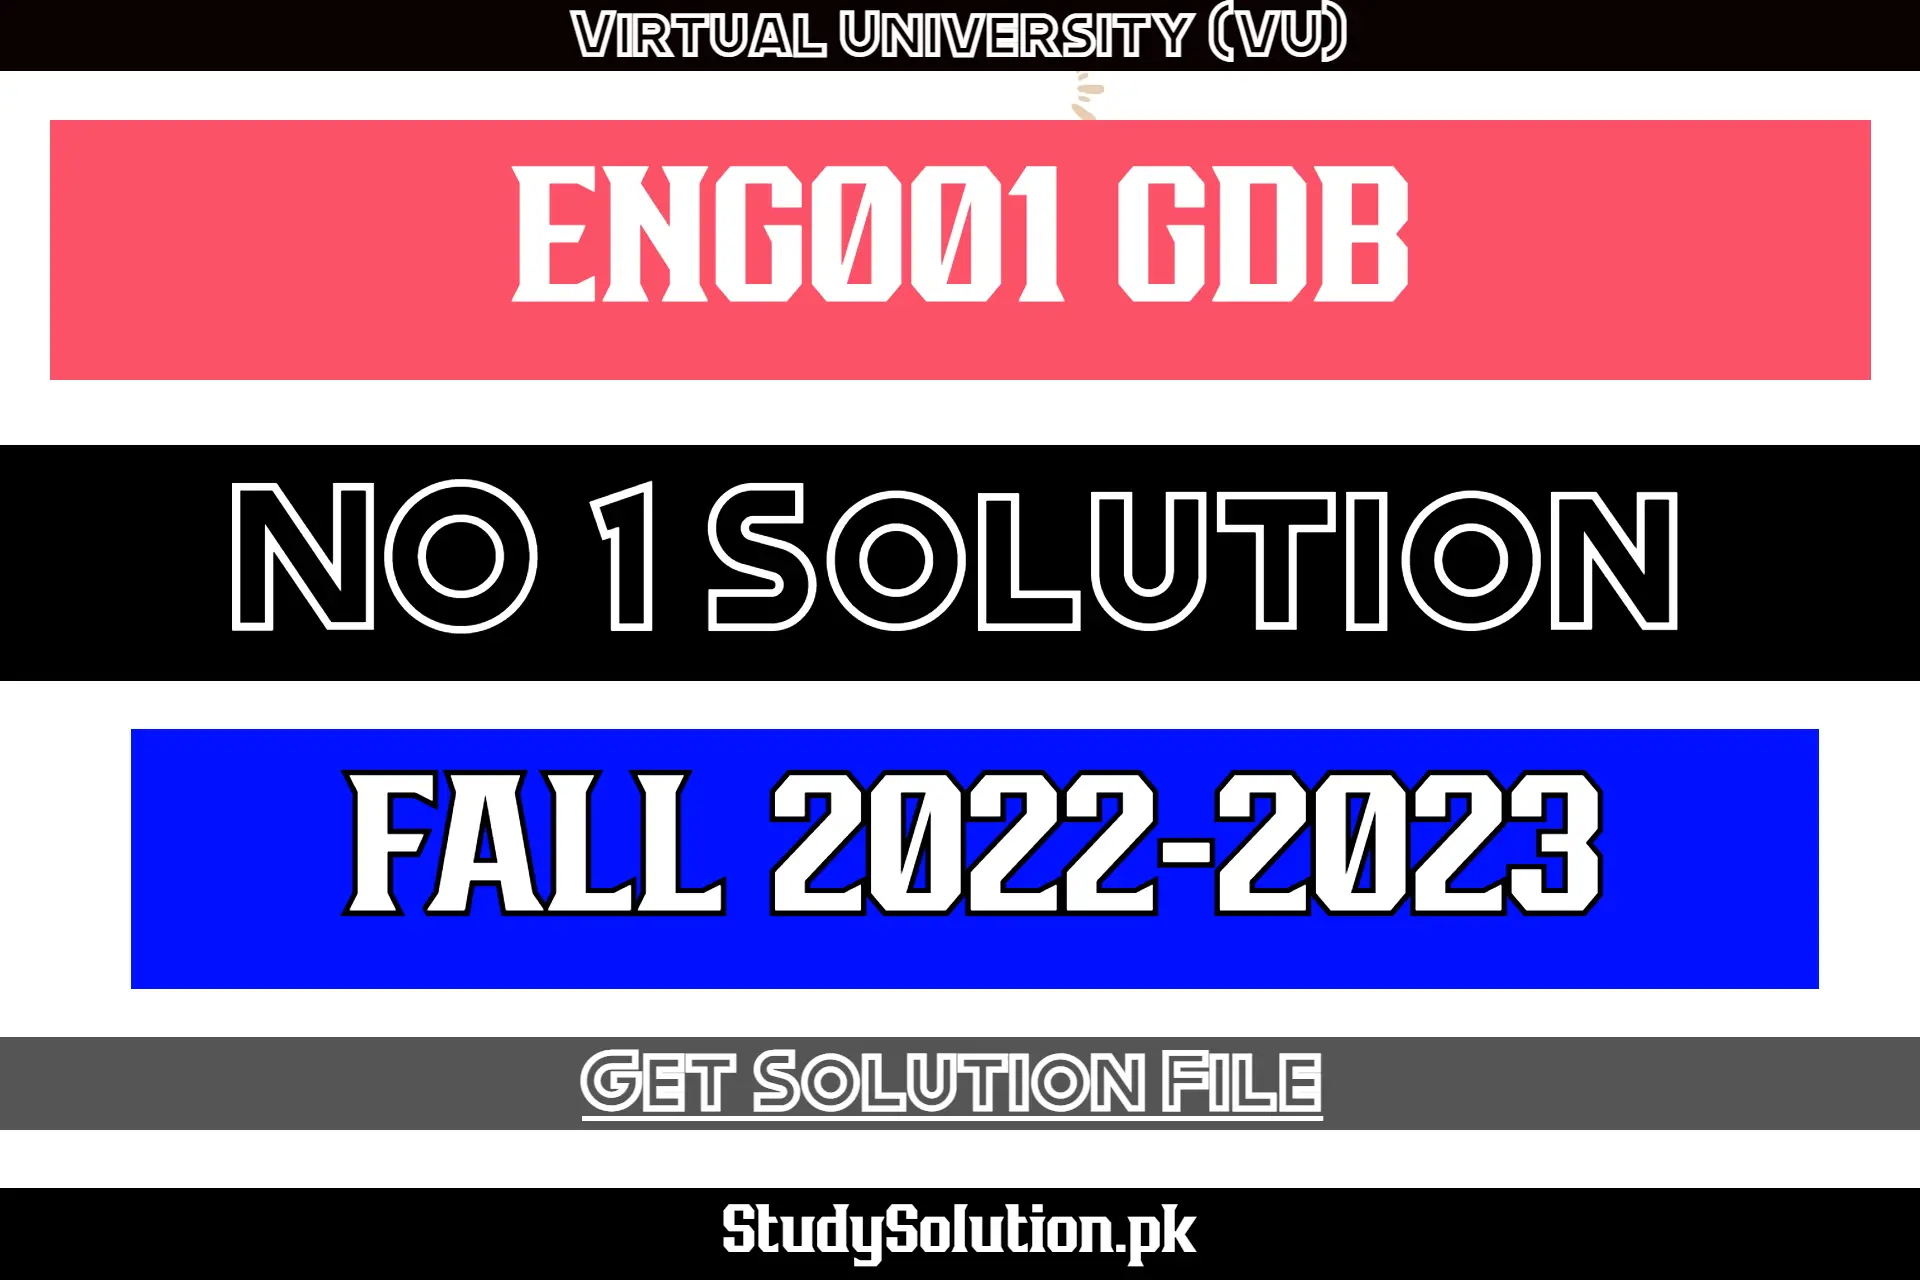 ENG001 GDB No 1 Solution Fall 2022